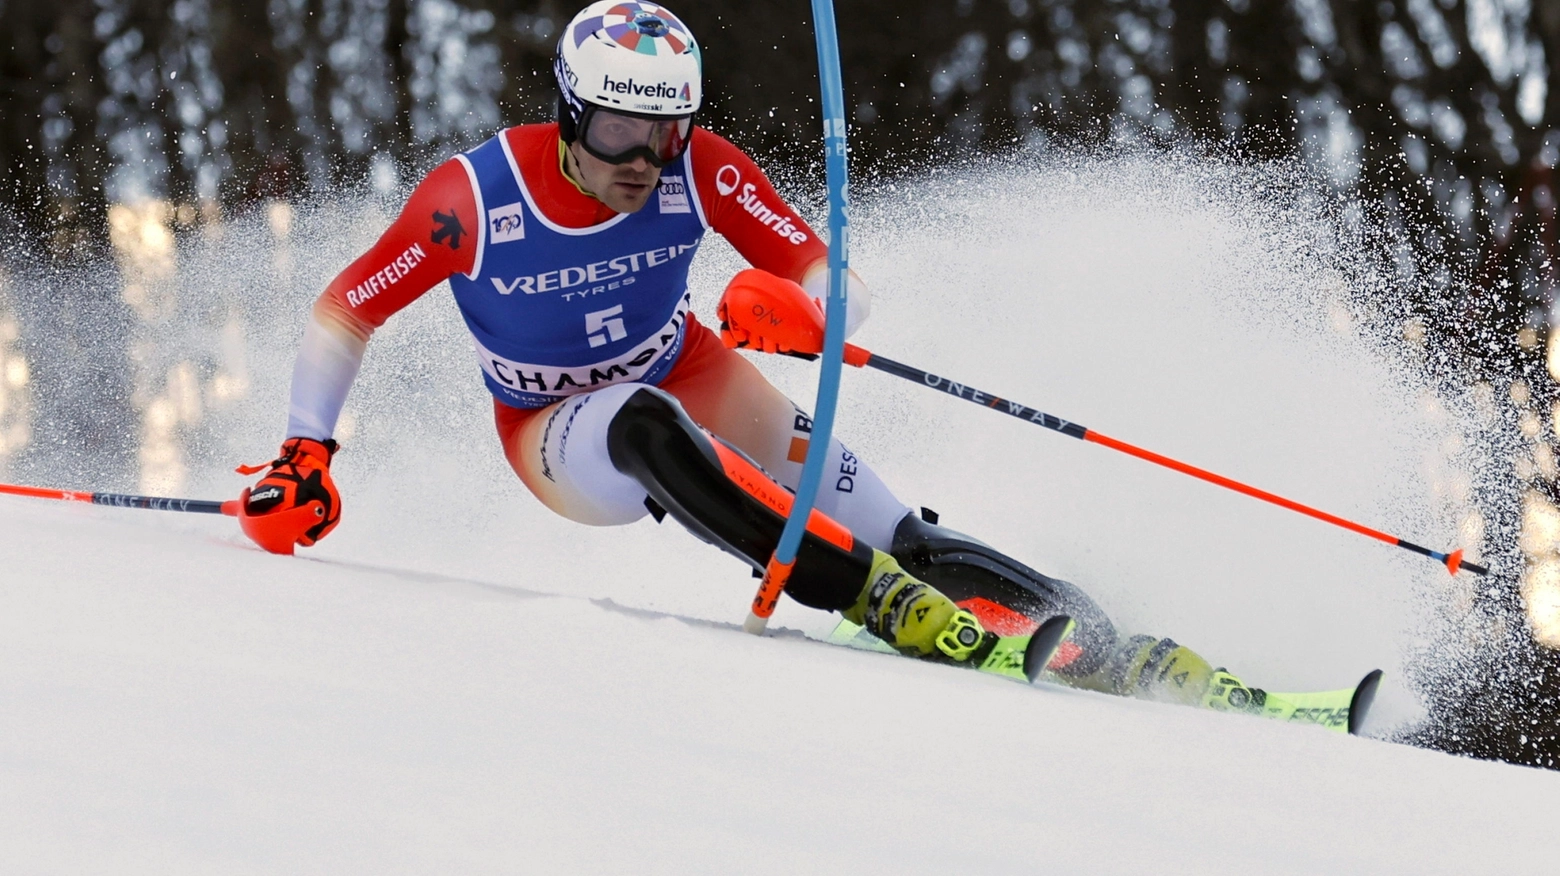 Lo sciatore svizzero rimonta trenta posizioni rispetto alla prima manche e porta a casa un successo insperato. Vinatzer il migliore degli azzurri: è decimo